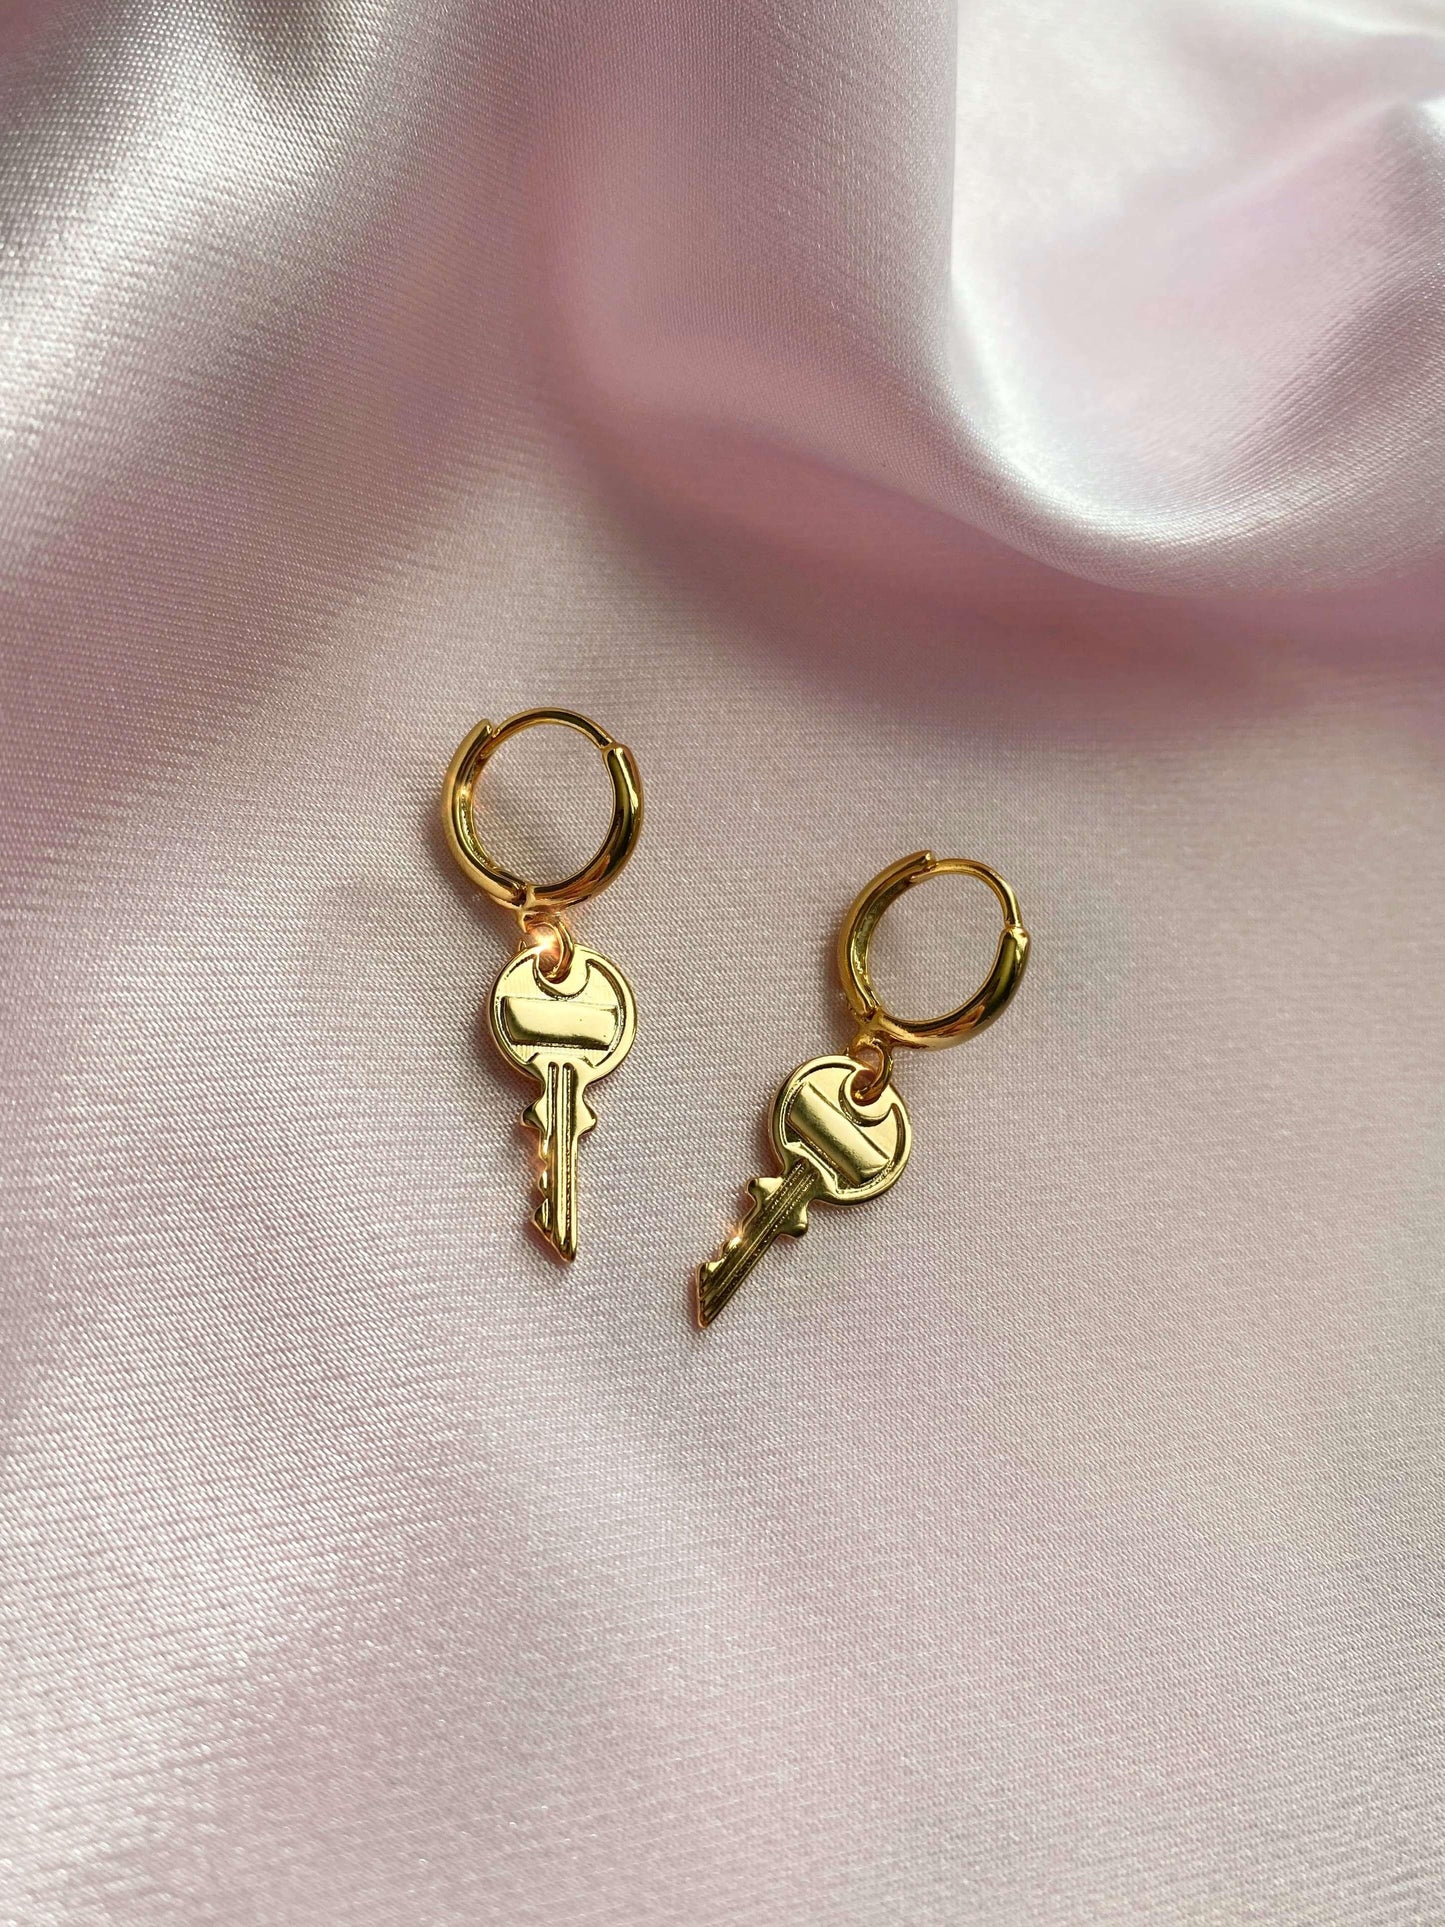 Lock Earrings Lock Key Earrings Dainty Hoops Gold 